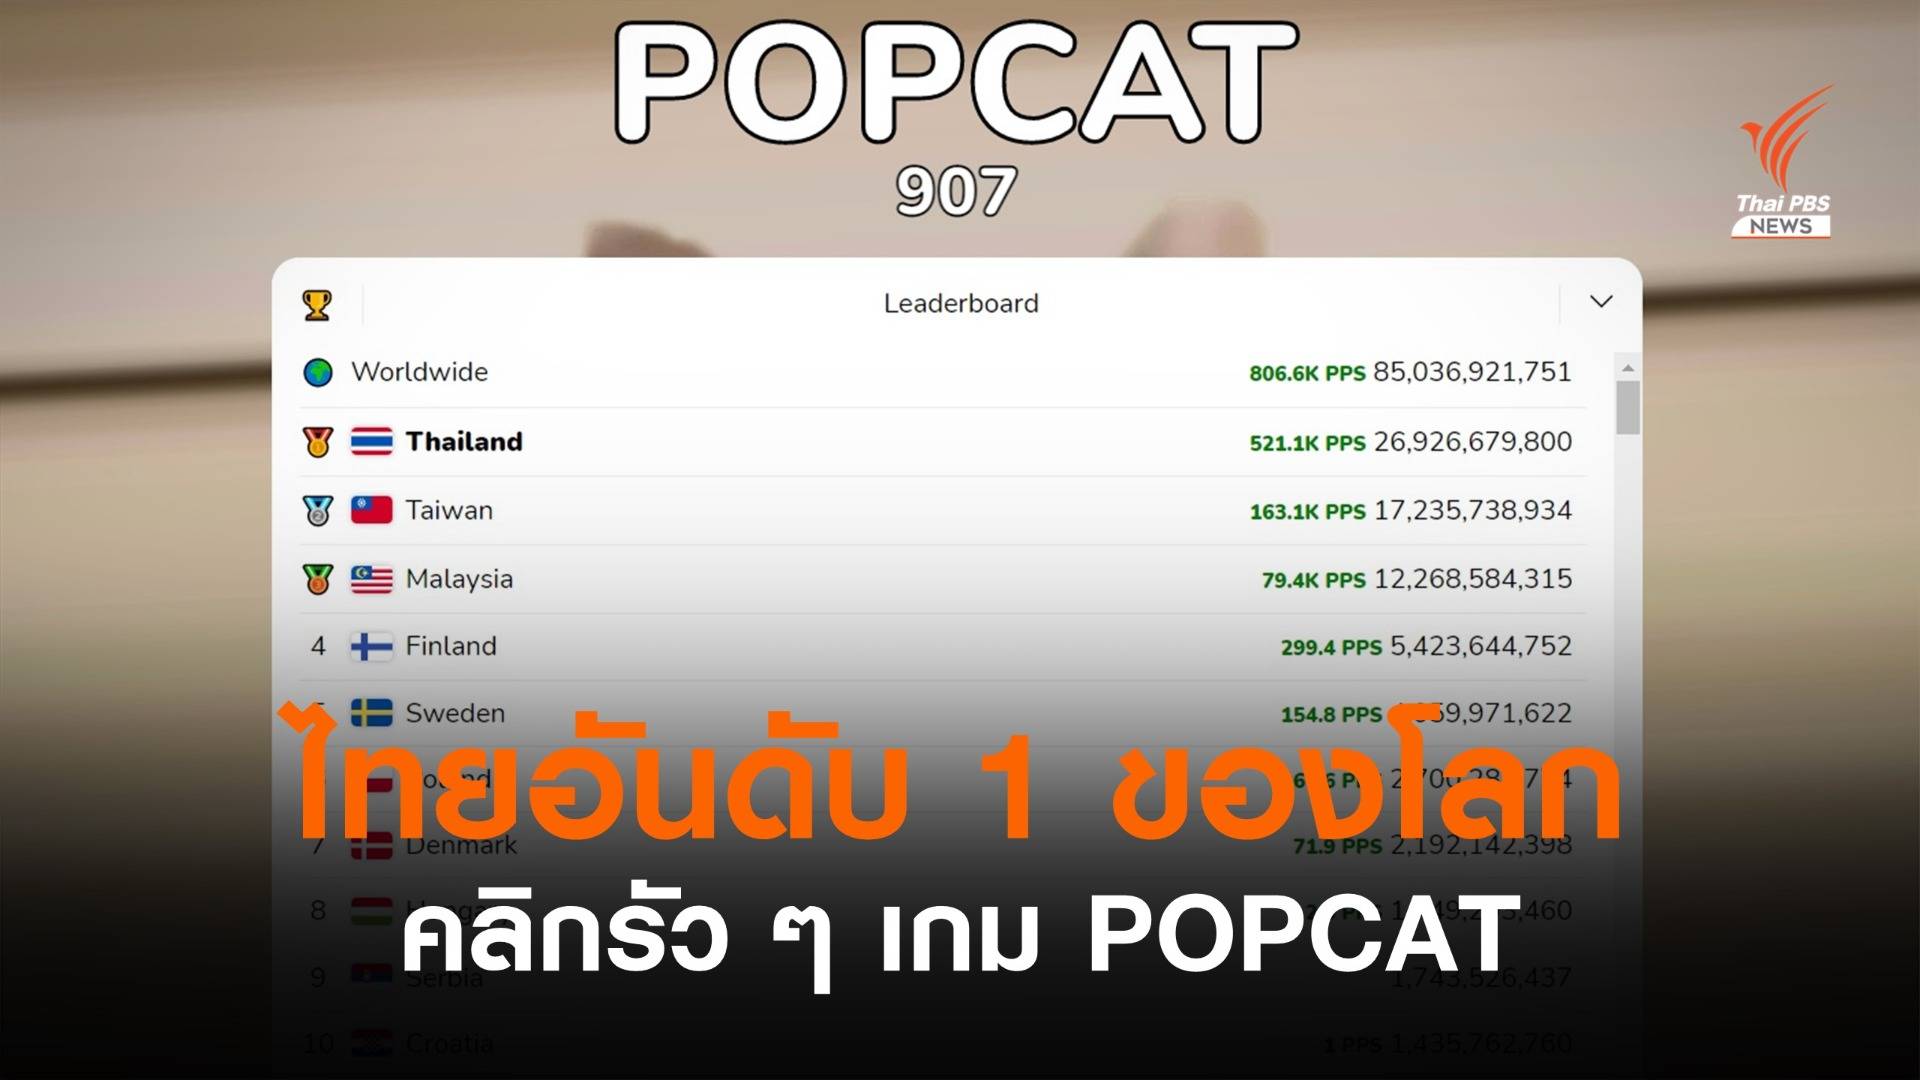 ไทยรวมใจ! กดรัวๆ เกม POPCAT ให้แมวอ้าปาก ขึ้นอันดับ 1 ของโลก